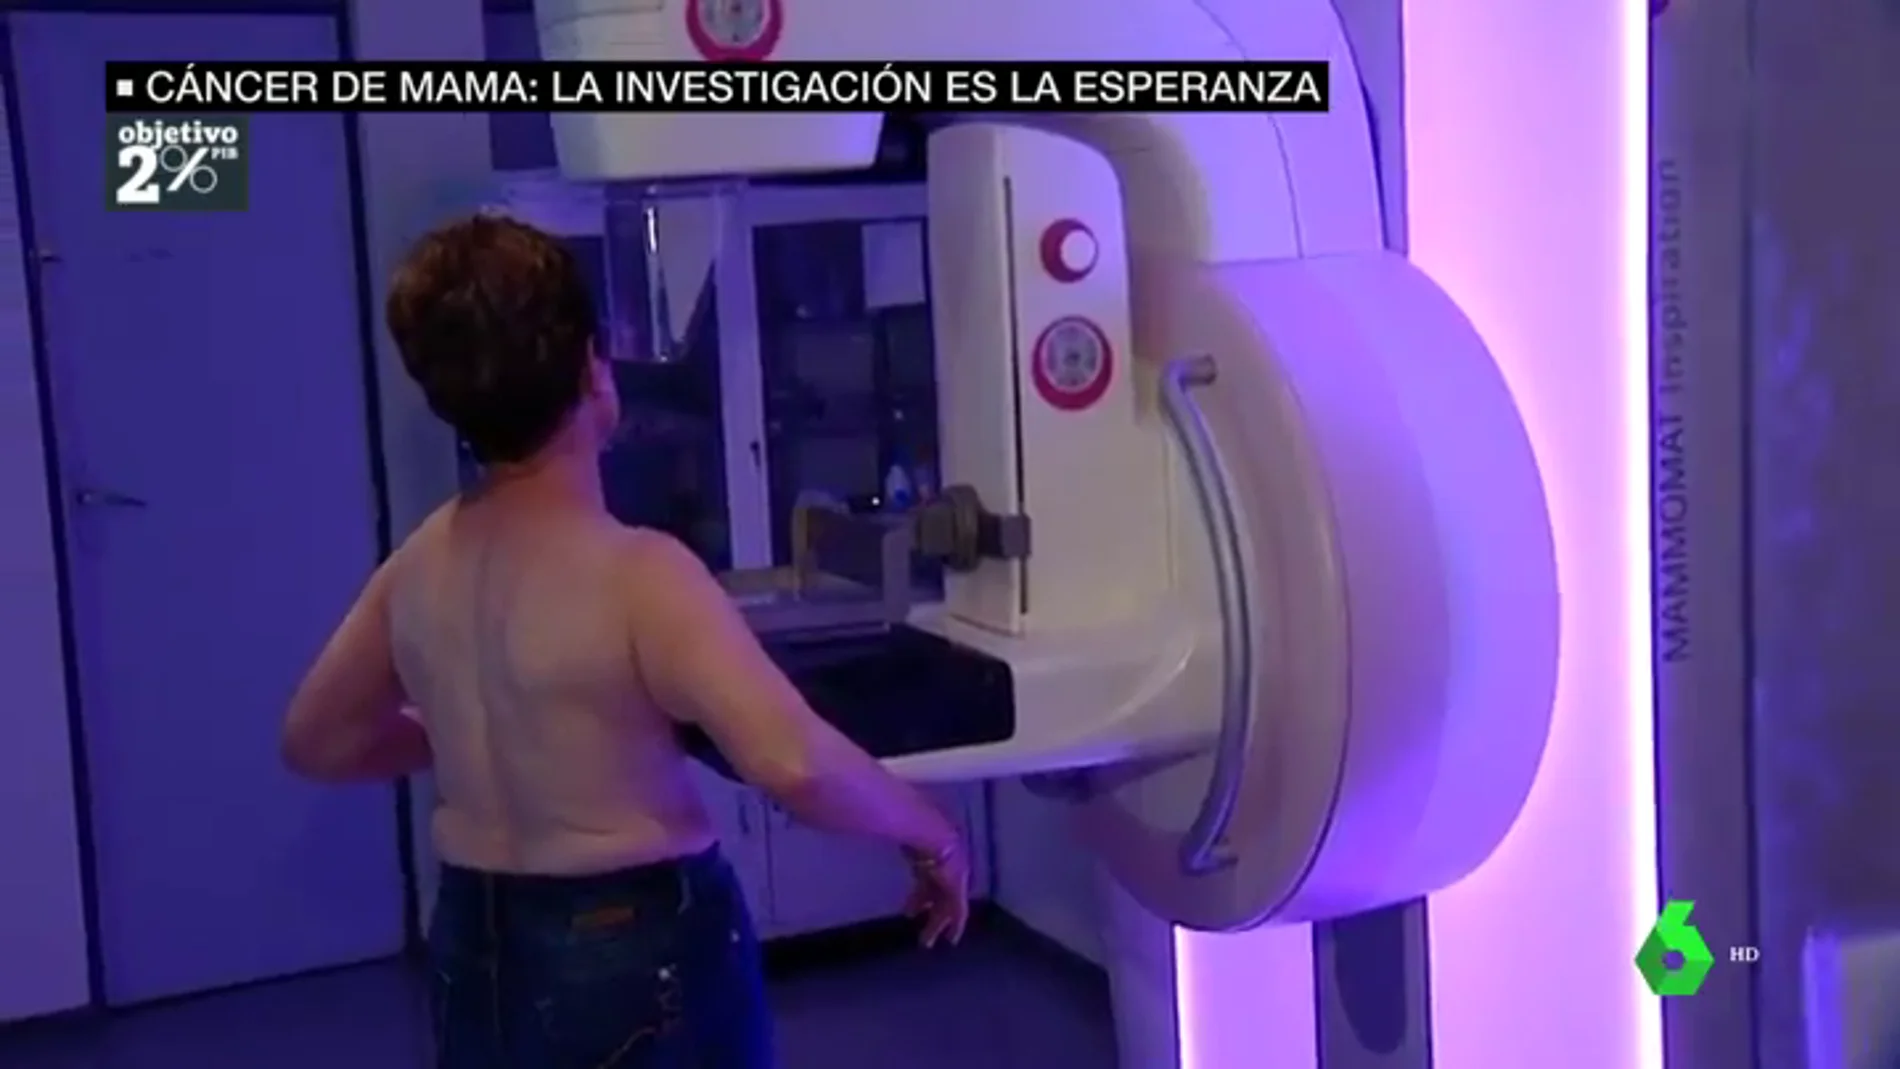 La inversión en investigación, la esperanza al cáncer de mama: la solución urgente que esperan 33.000 mujeres en España